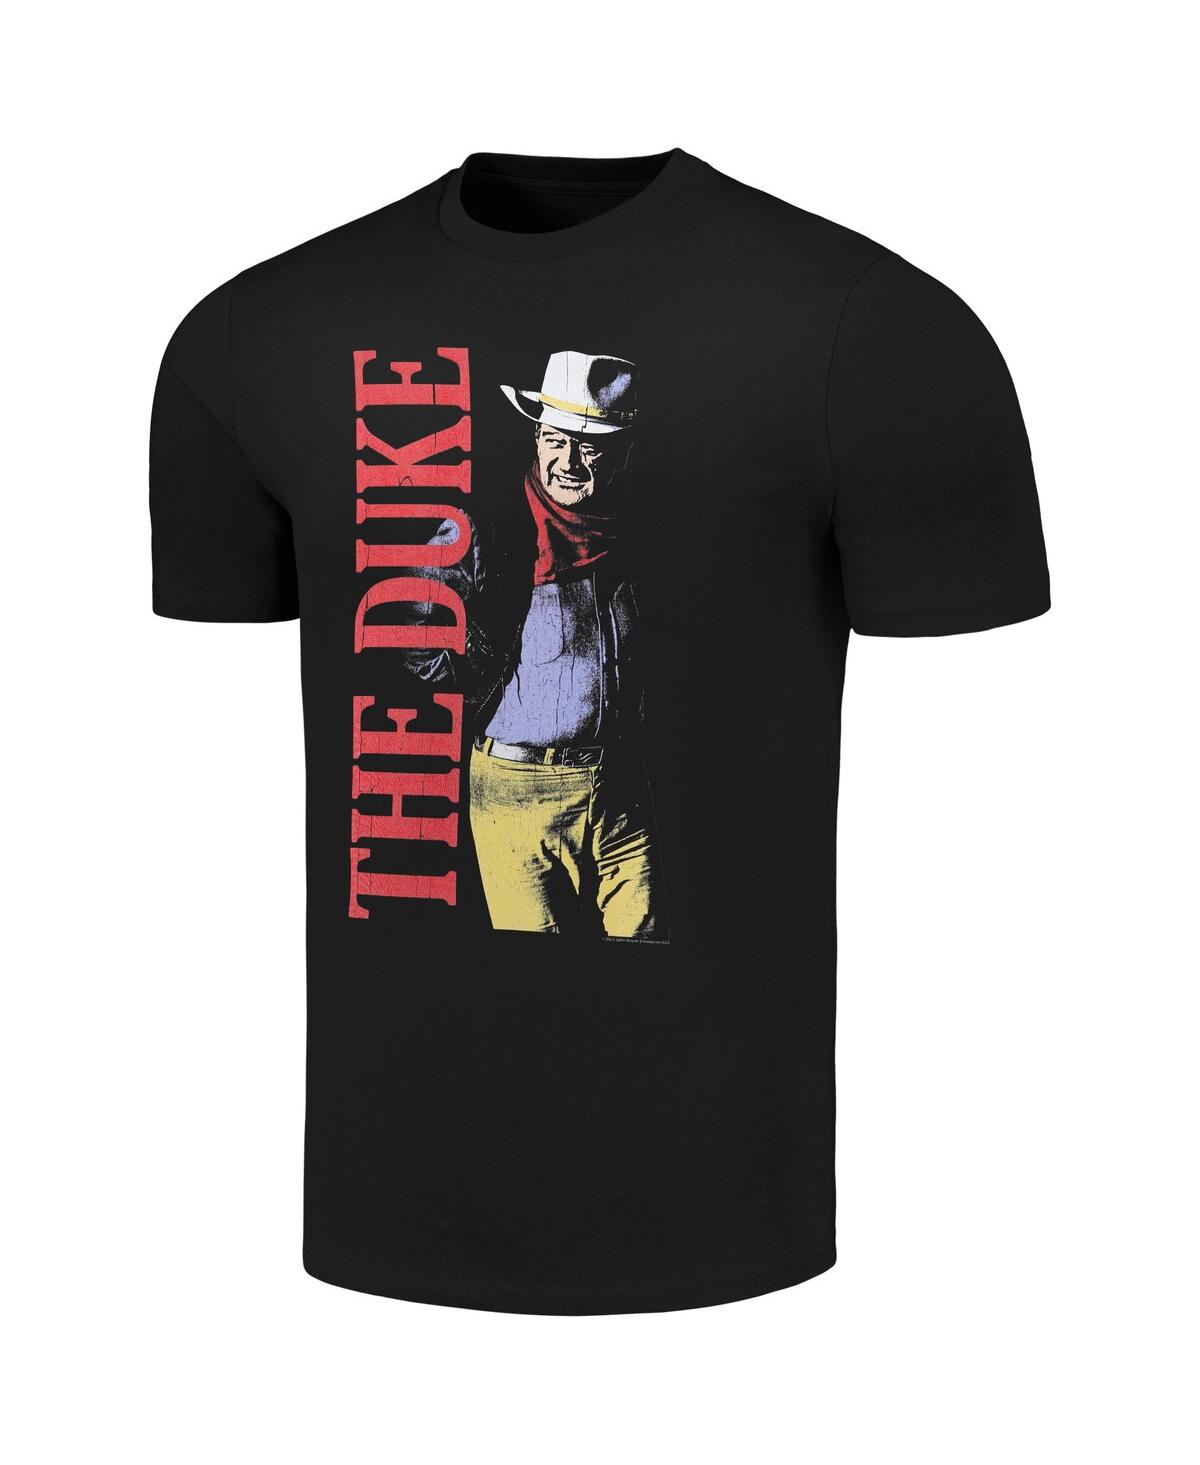 Shop American Classics Men's Black John Wayne The Duke T-shirt